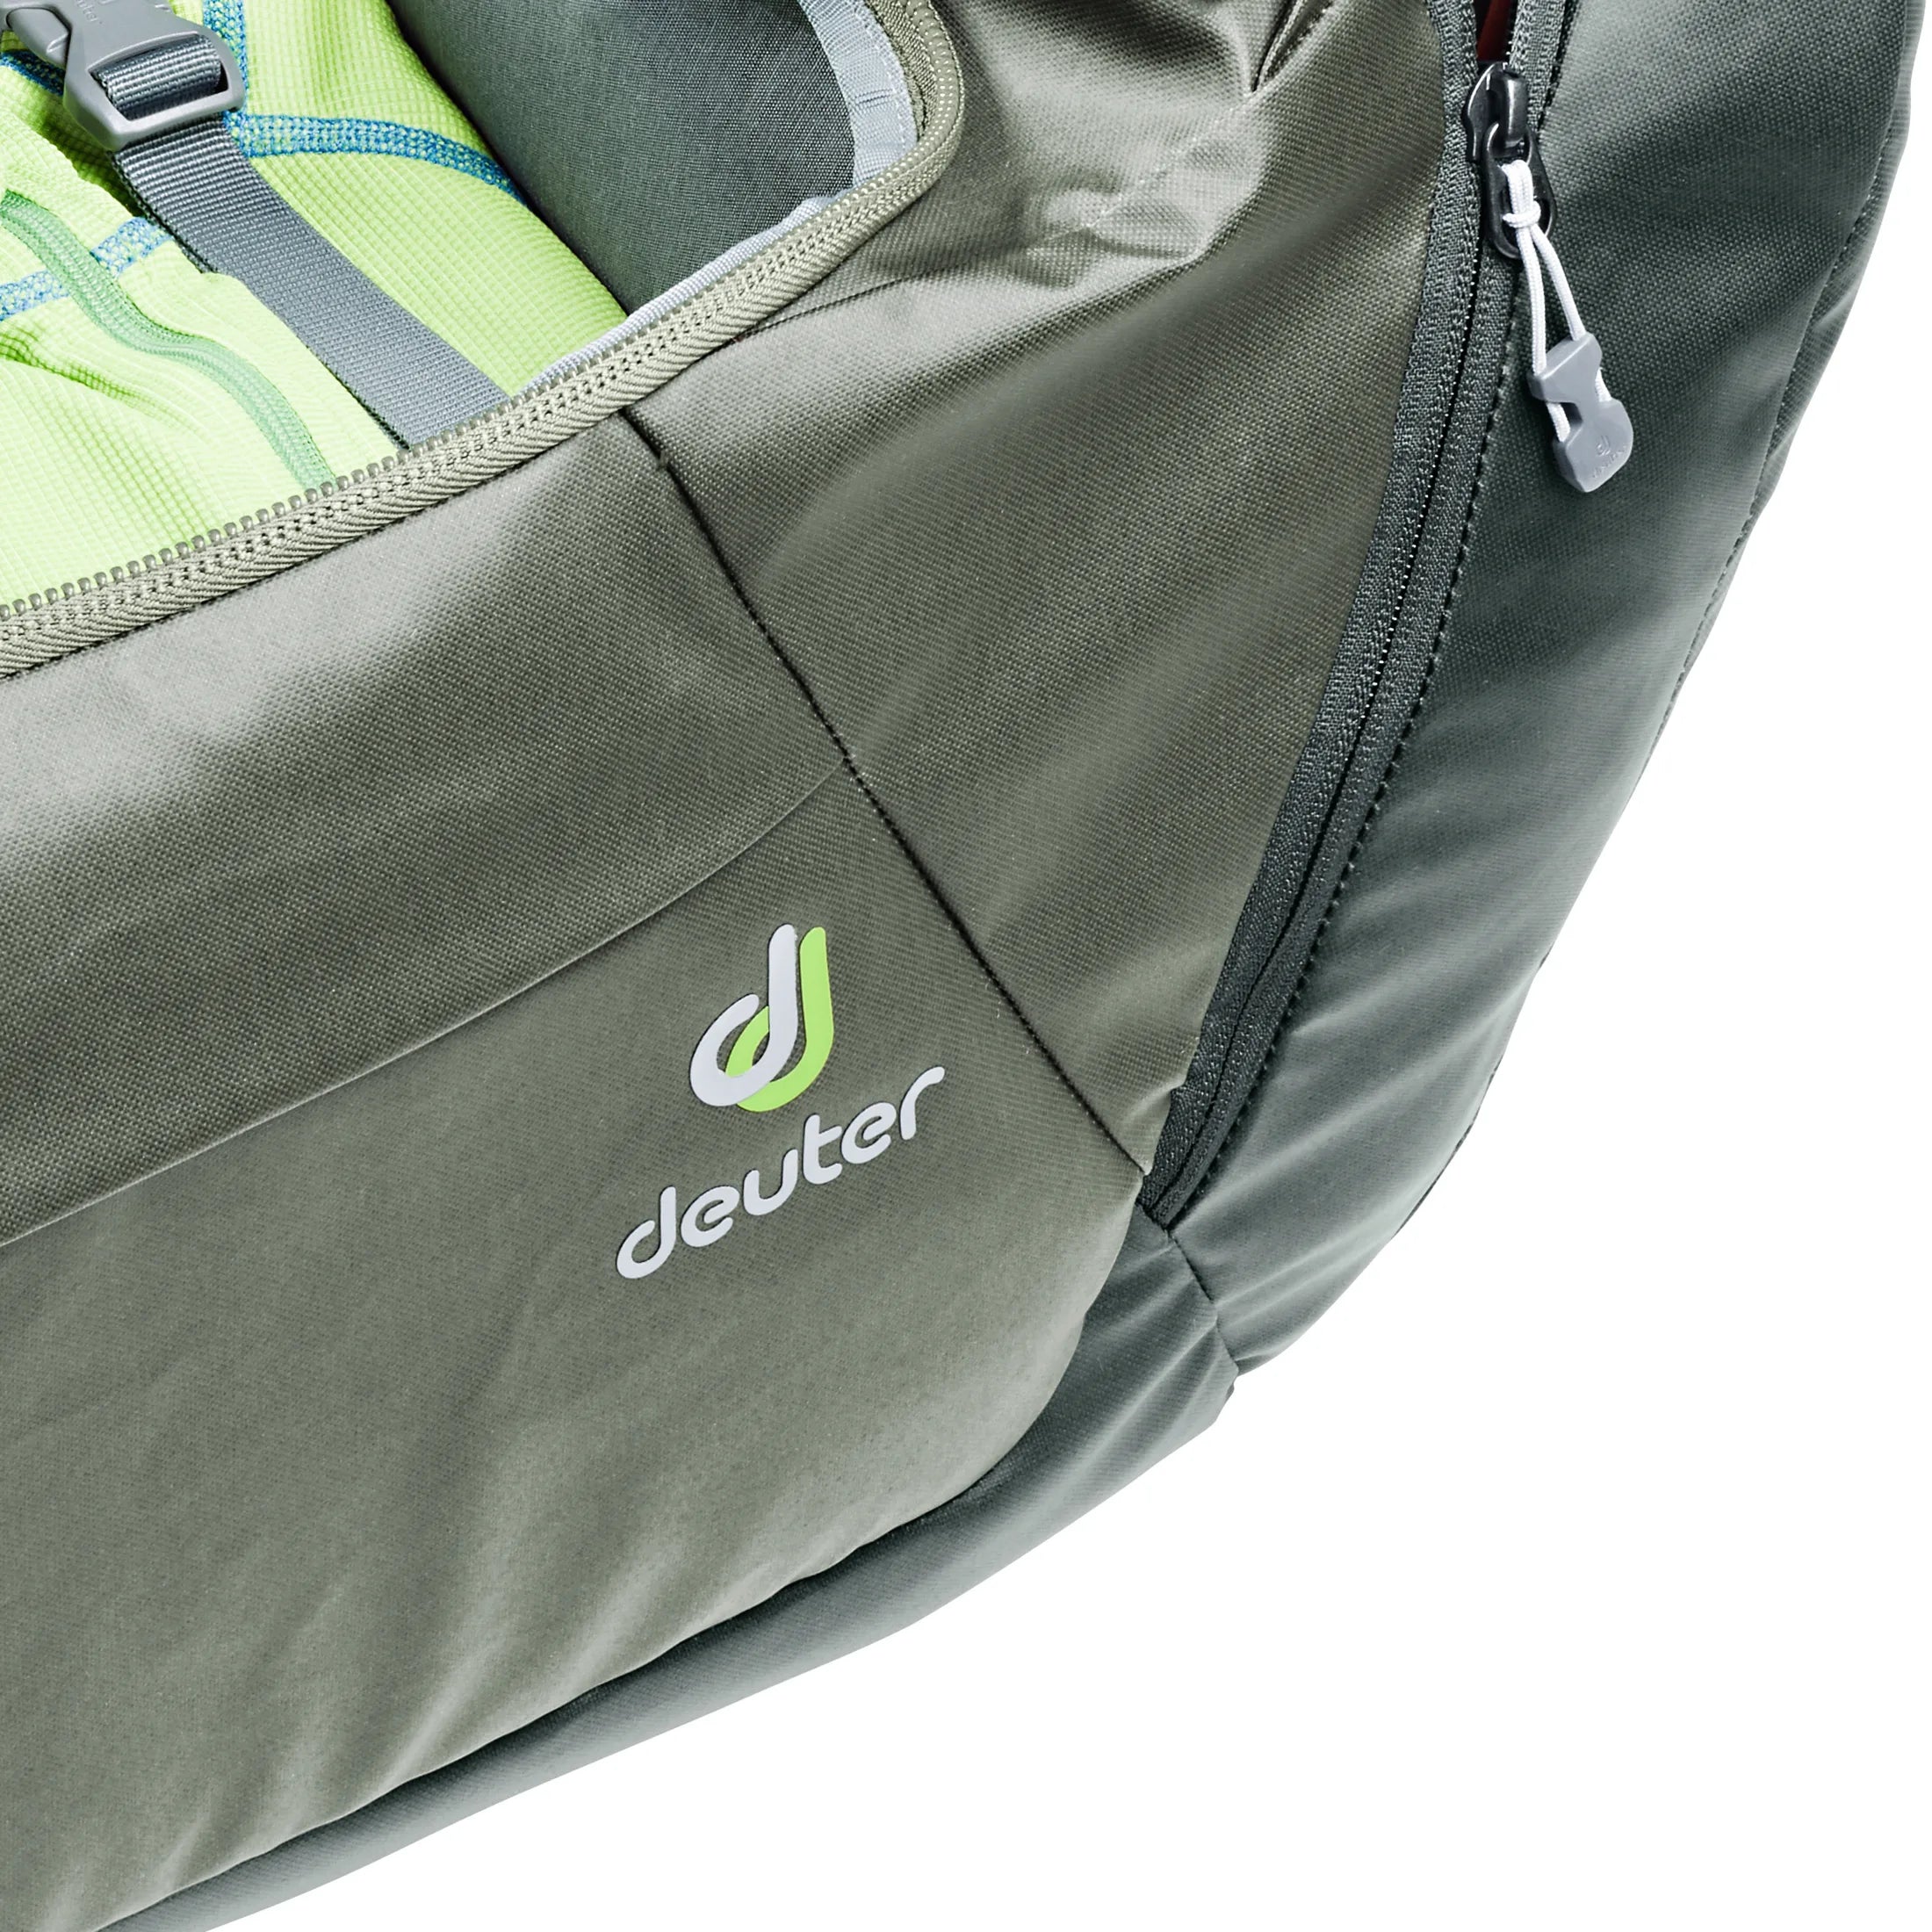 Deuter Travel Aviant Duffle Pro 40 sac de voyage 52 cm - jade-vert d'eau